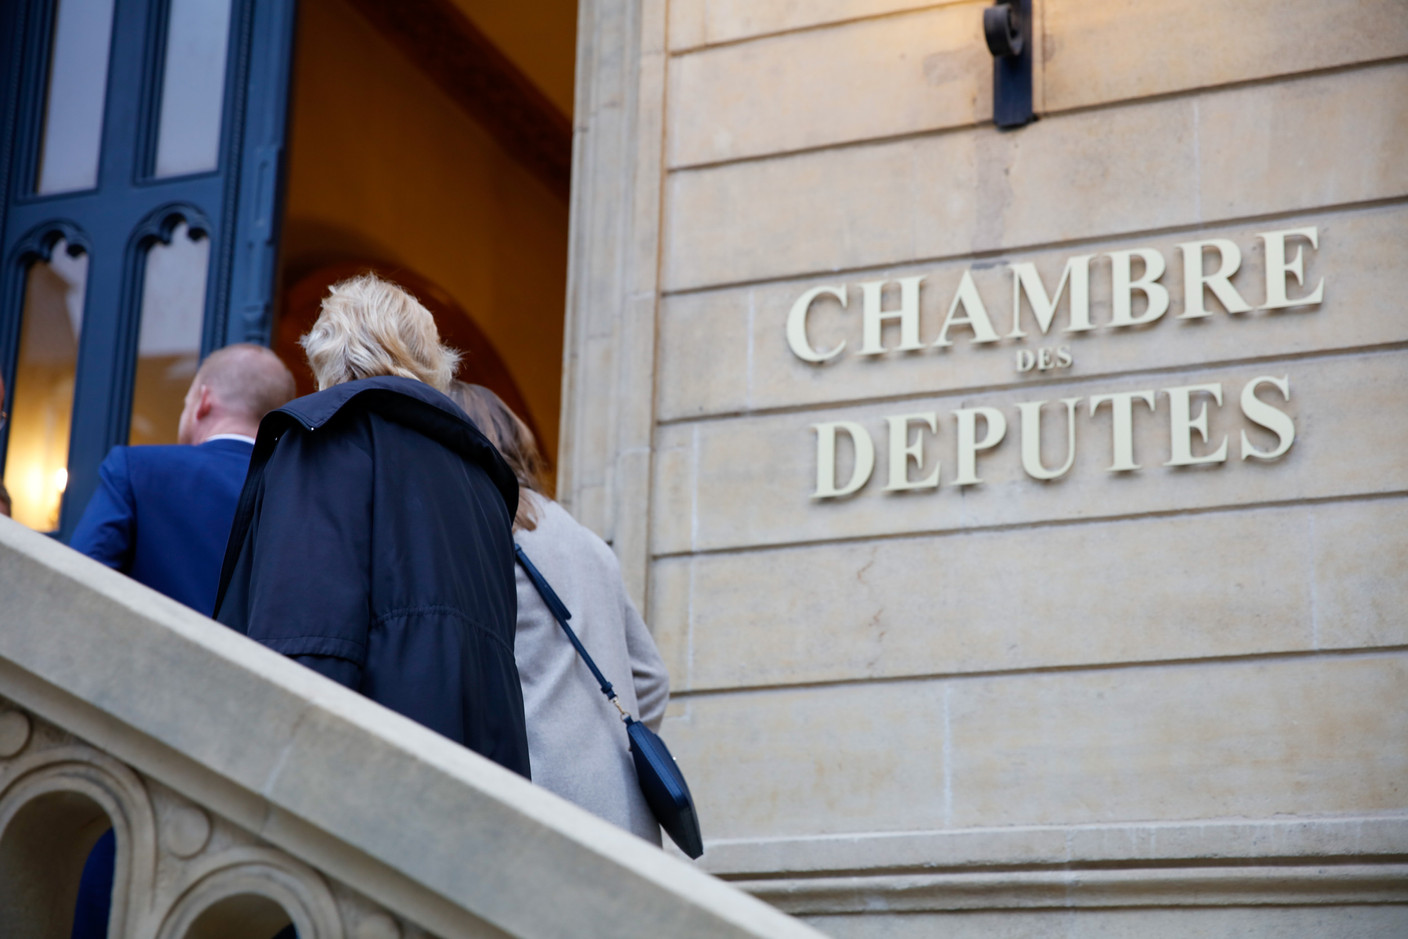 La Chambre des députés, située rue du Marché-aux-Herbes, reprend du service, après la parenthèse liée à la crise sanitaire. (Photo: Romain Gamba/Maison Moderne)